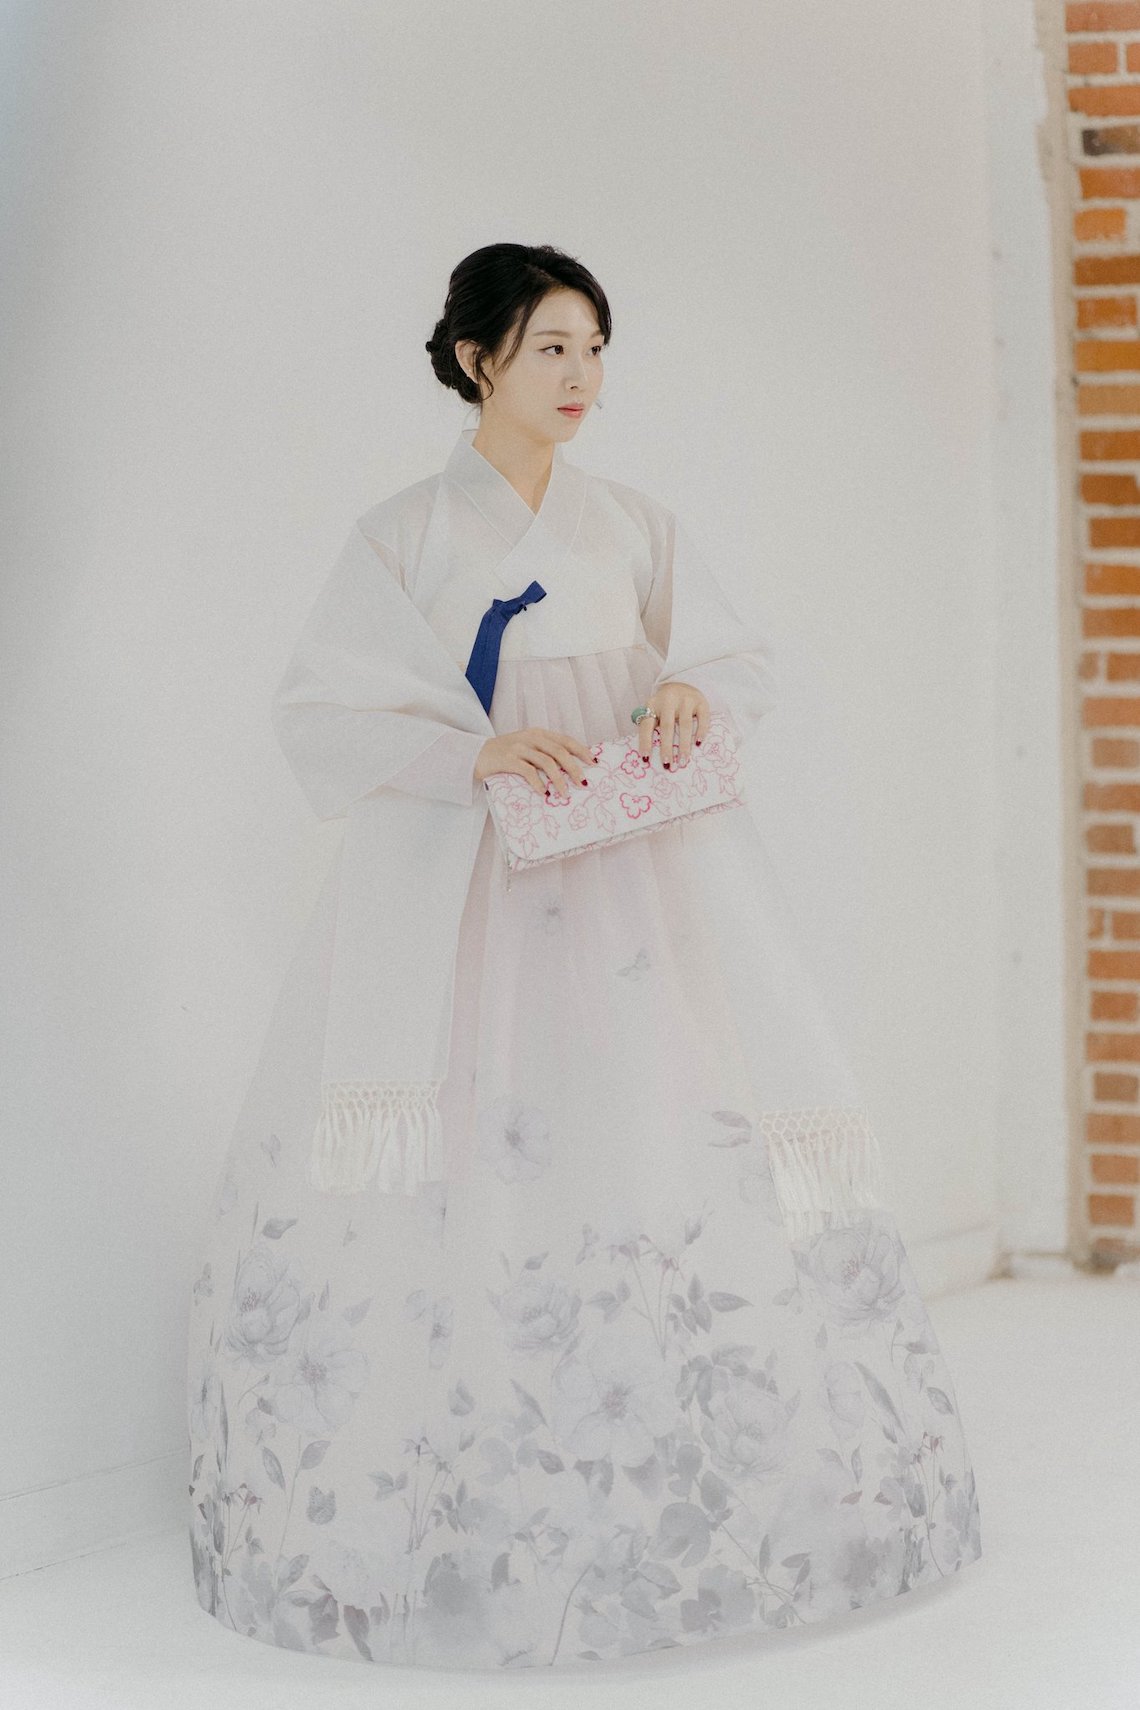 Leehwa Wedding Lillianna White and Blue Wedding Hanbok Modern Korean Hanbok Wedding Dresses Bridal Musings 2 - 15 chiếc váy cưới Hanbok Hàn Quốc tuyệt đẹp và hiện đại